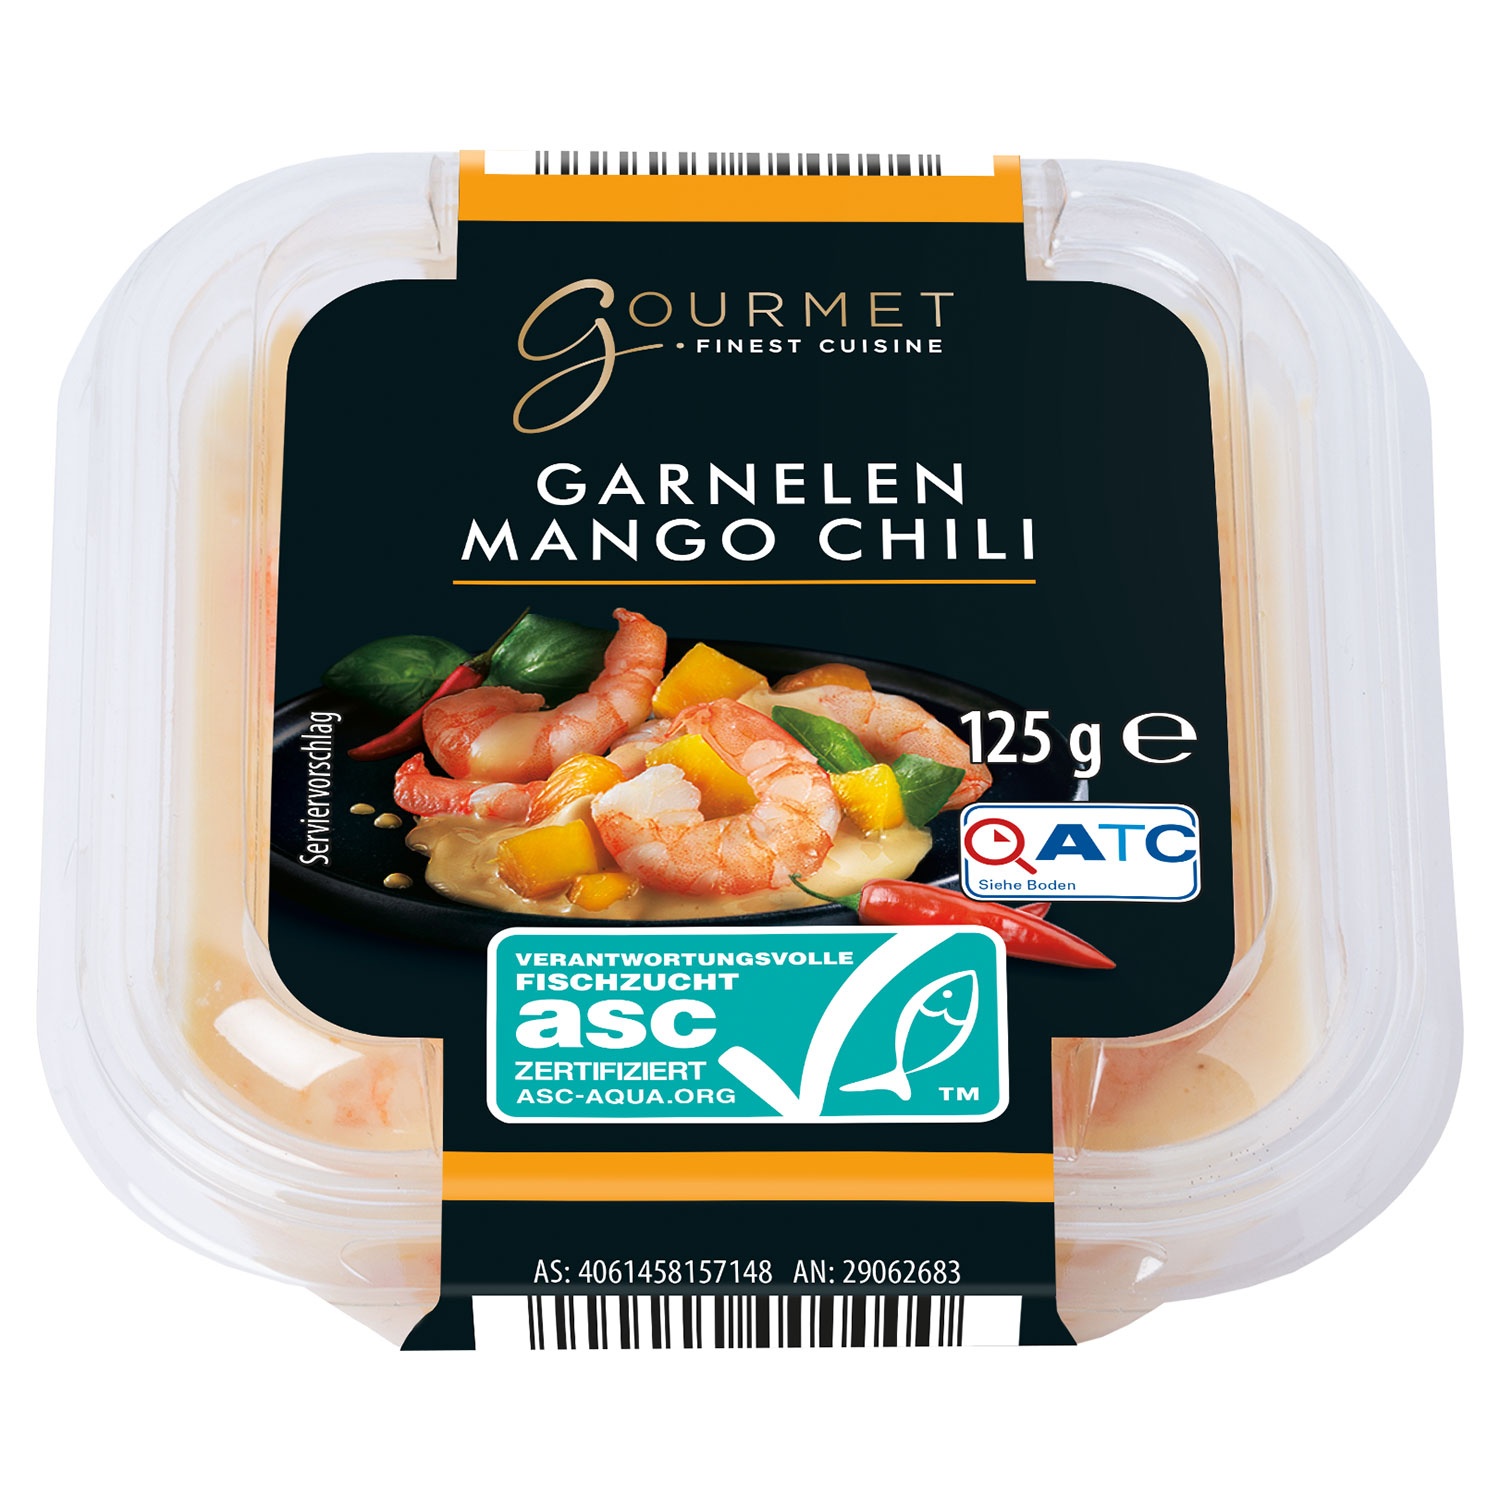 GOURMET FINEST CUISINE Premium-Salat 125 g